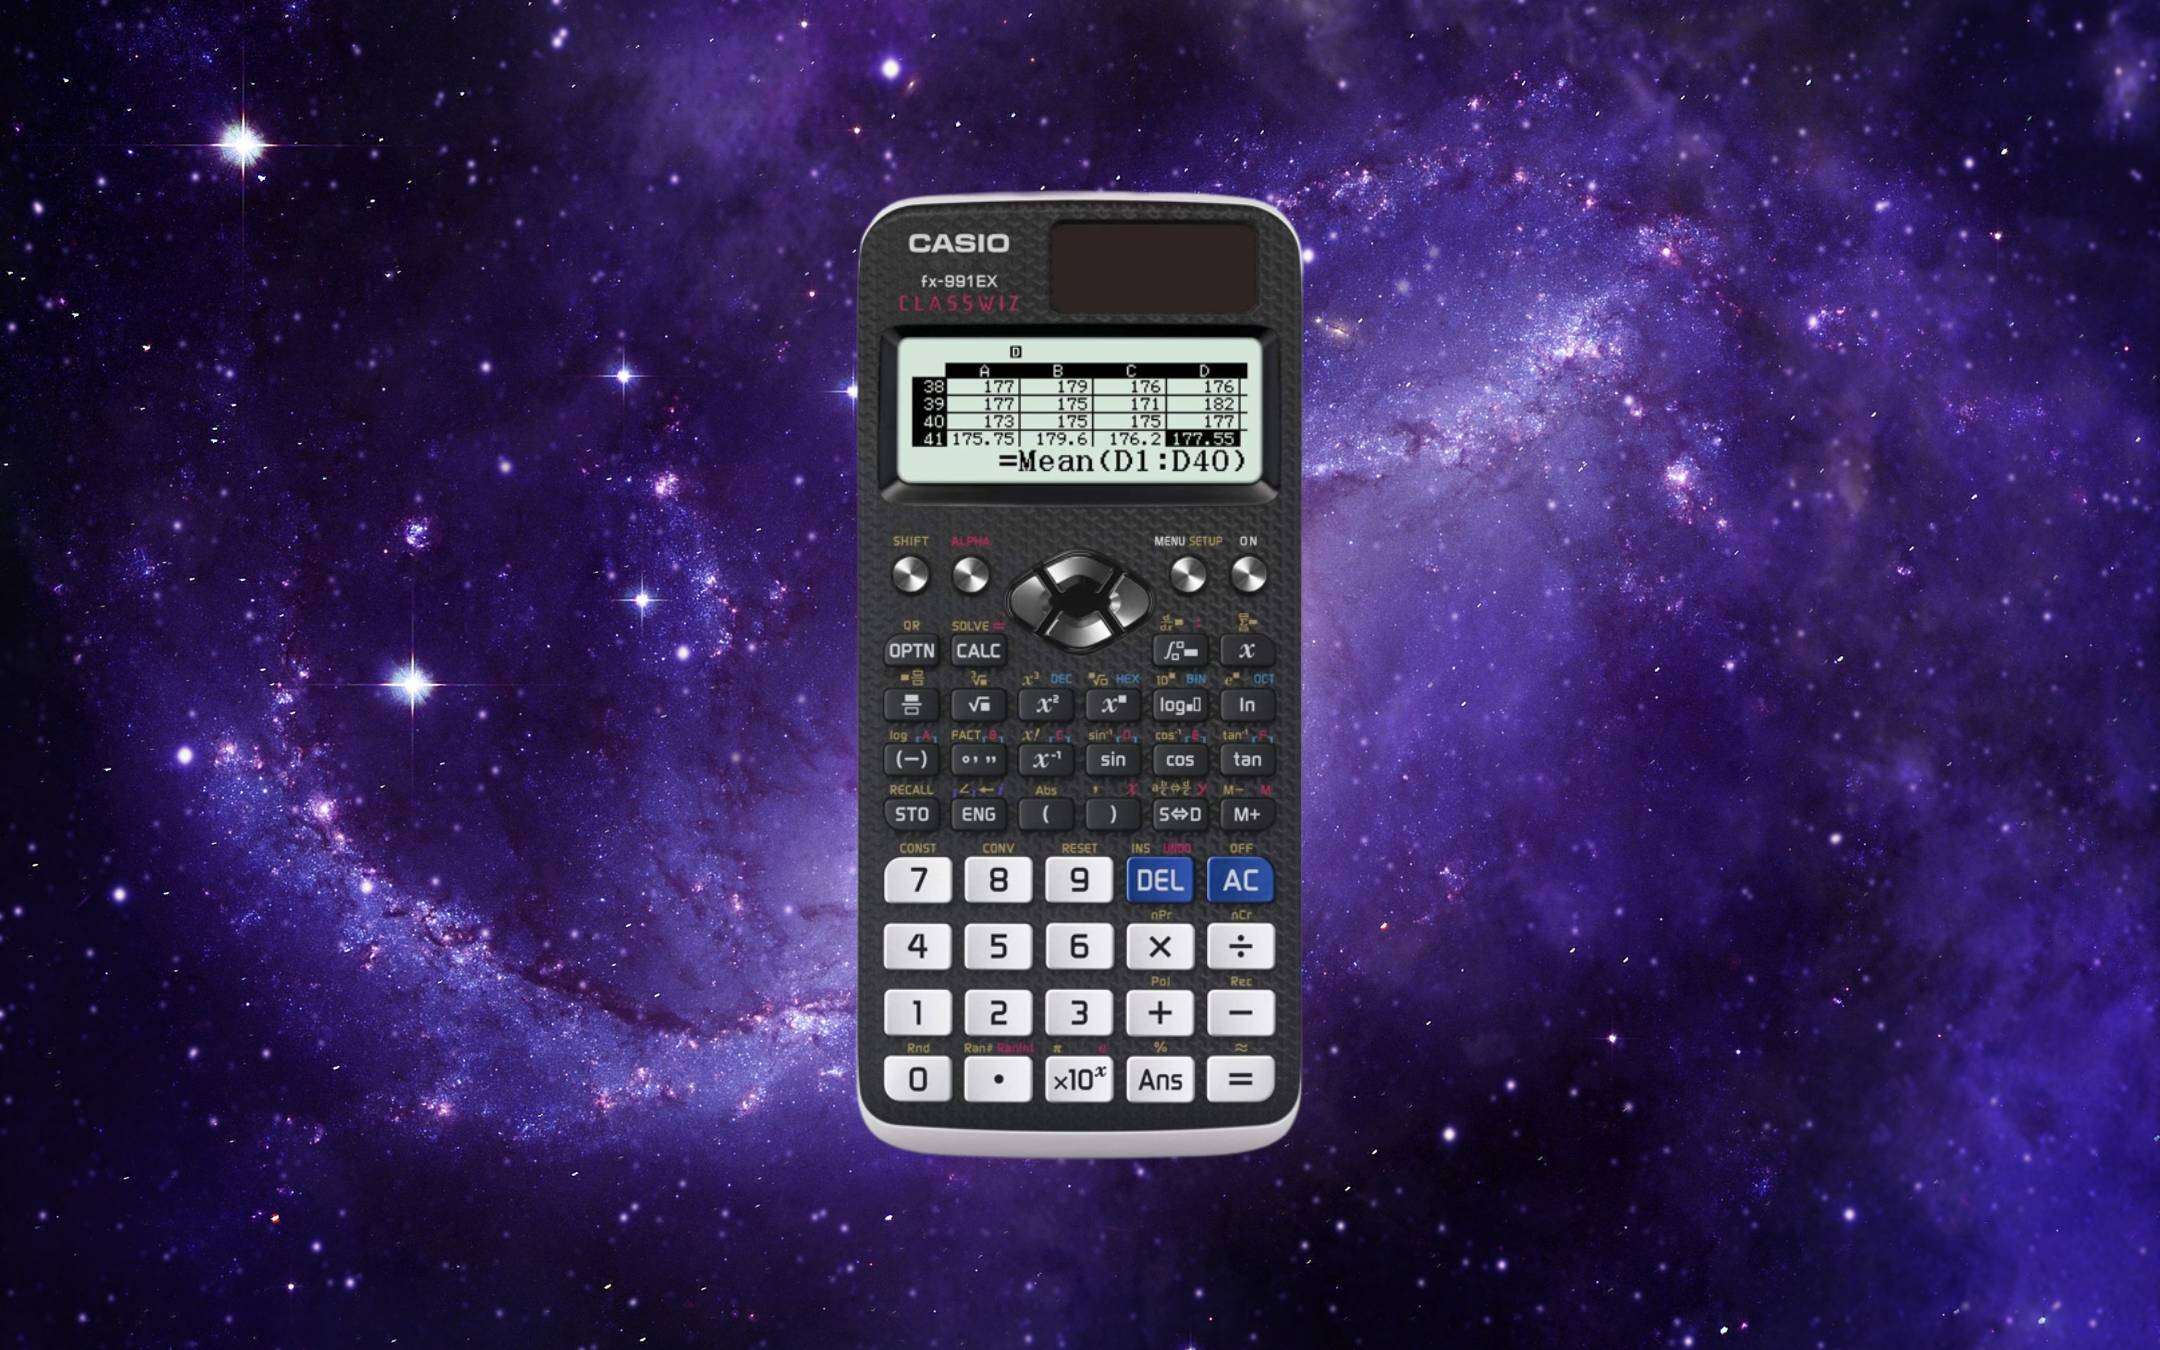 Calcolatrici scientifiche in offerta: la Casio Fx-991Ex scende sotto i 24€  (ma sta andando a ruba)